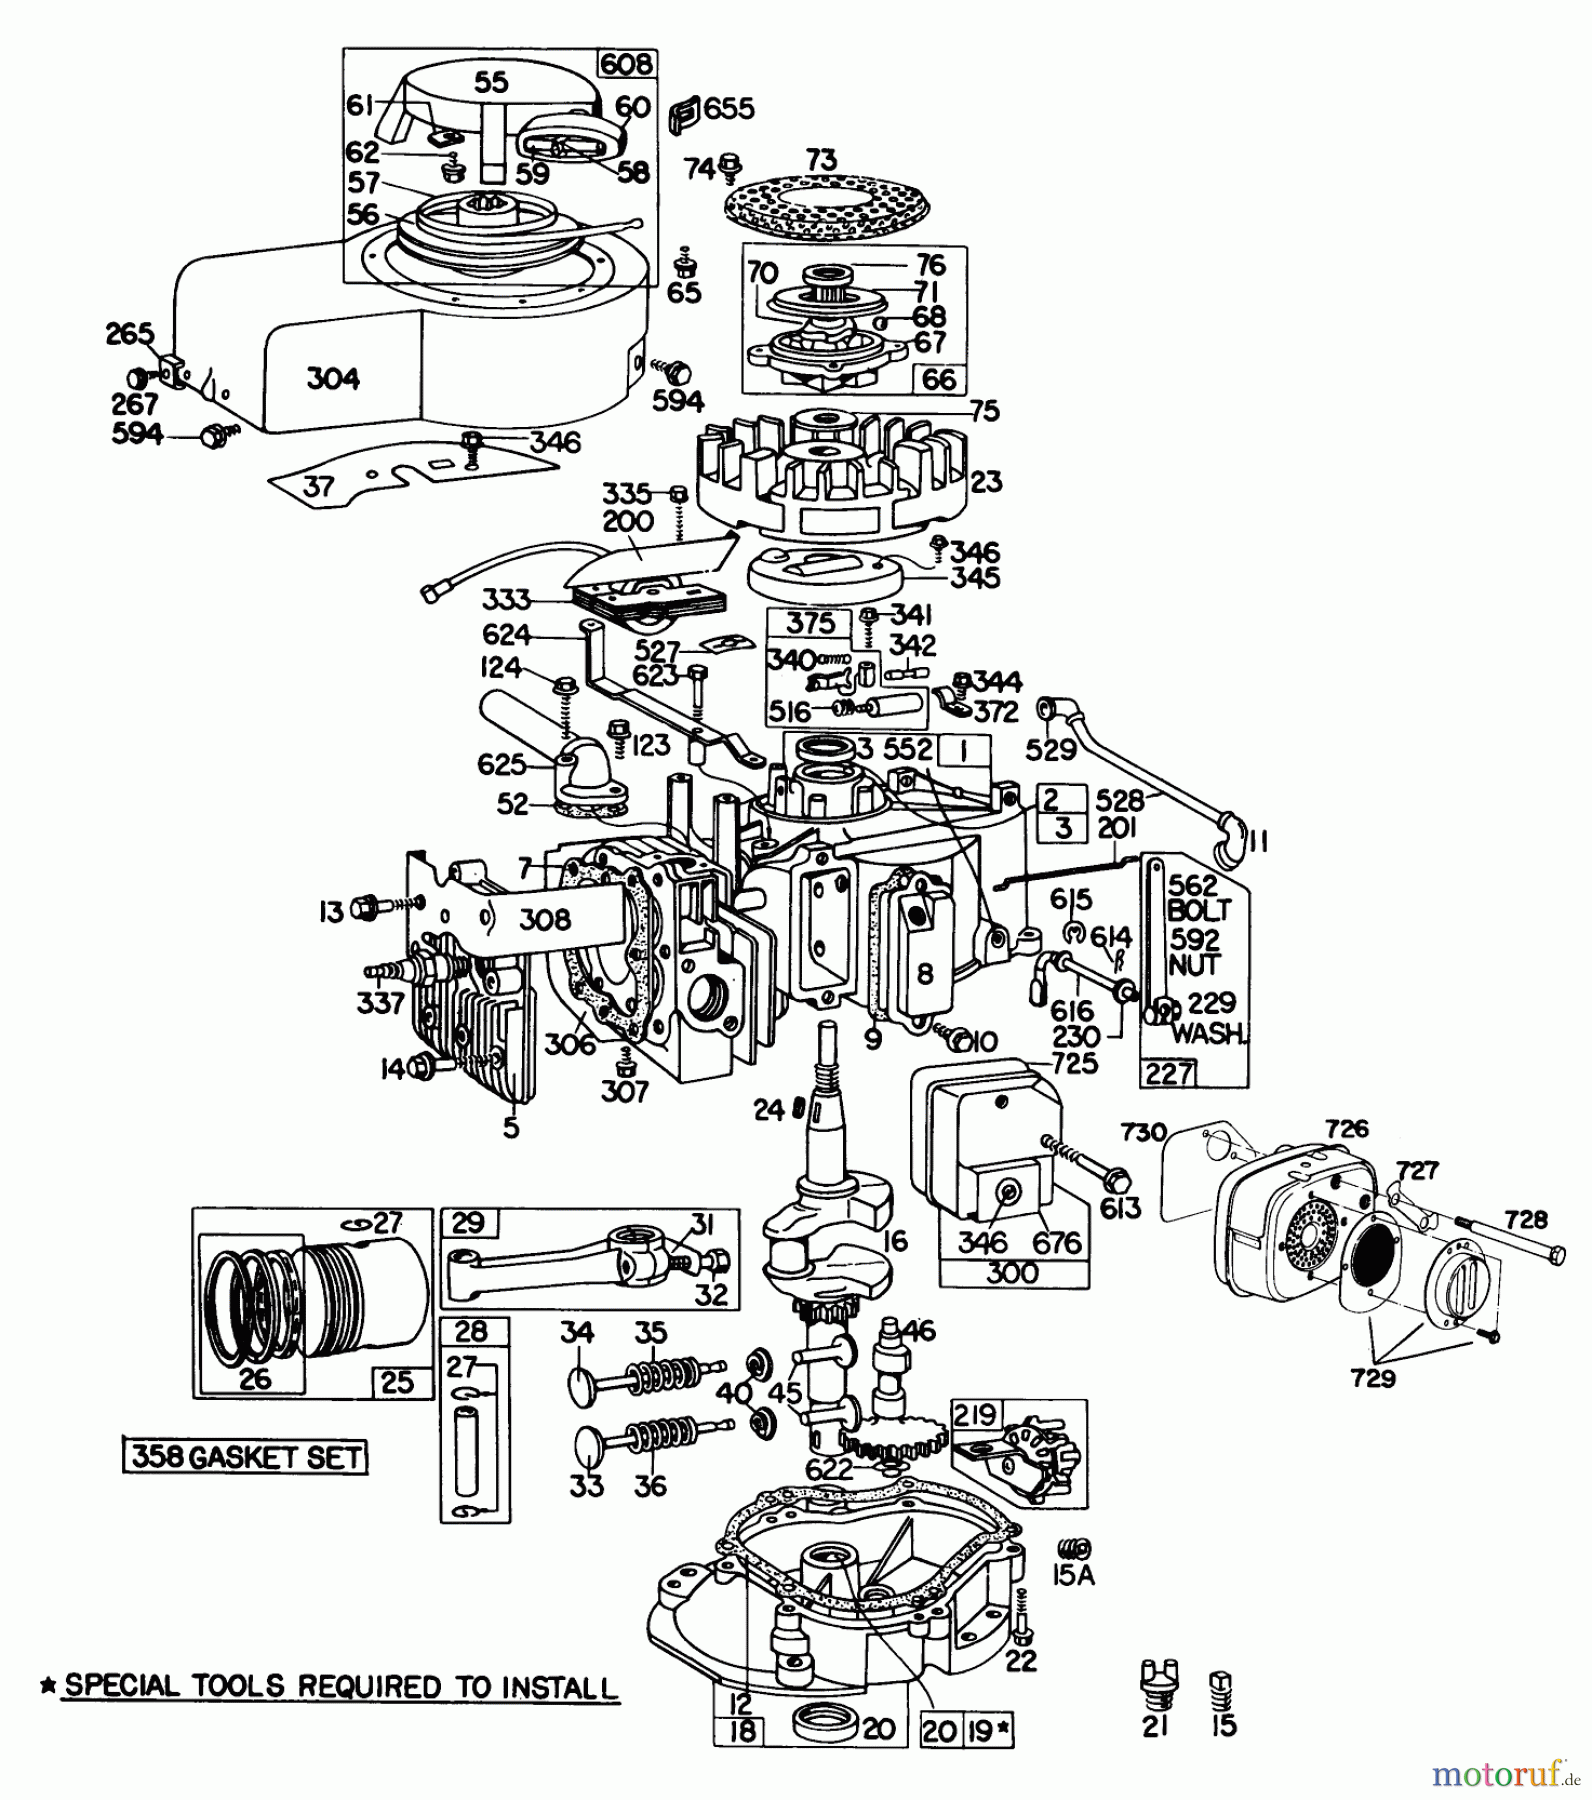  Toro Neu Mowers, Walk-Behind Seite 2 23177 - Toro Lawnmower, 1977 (7000001-7999999) ENGINE BRIGGS & STRATTON ENGINE MODEL 130902-0509-01